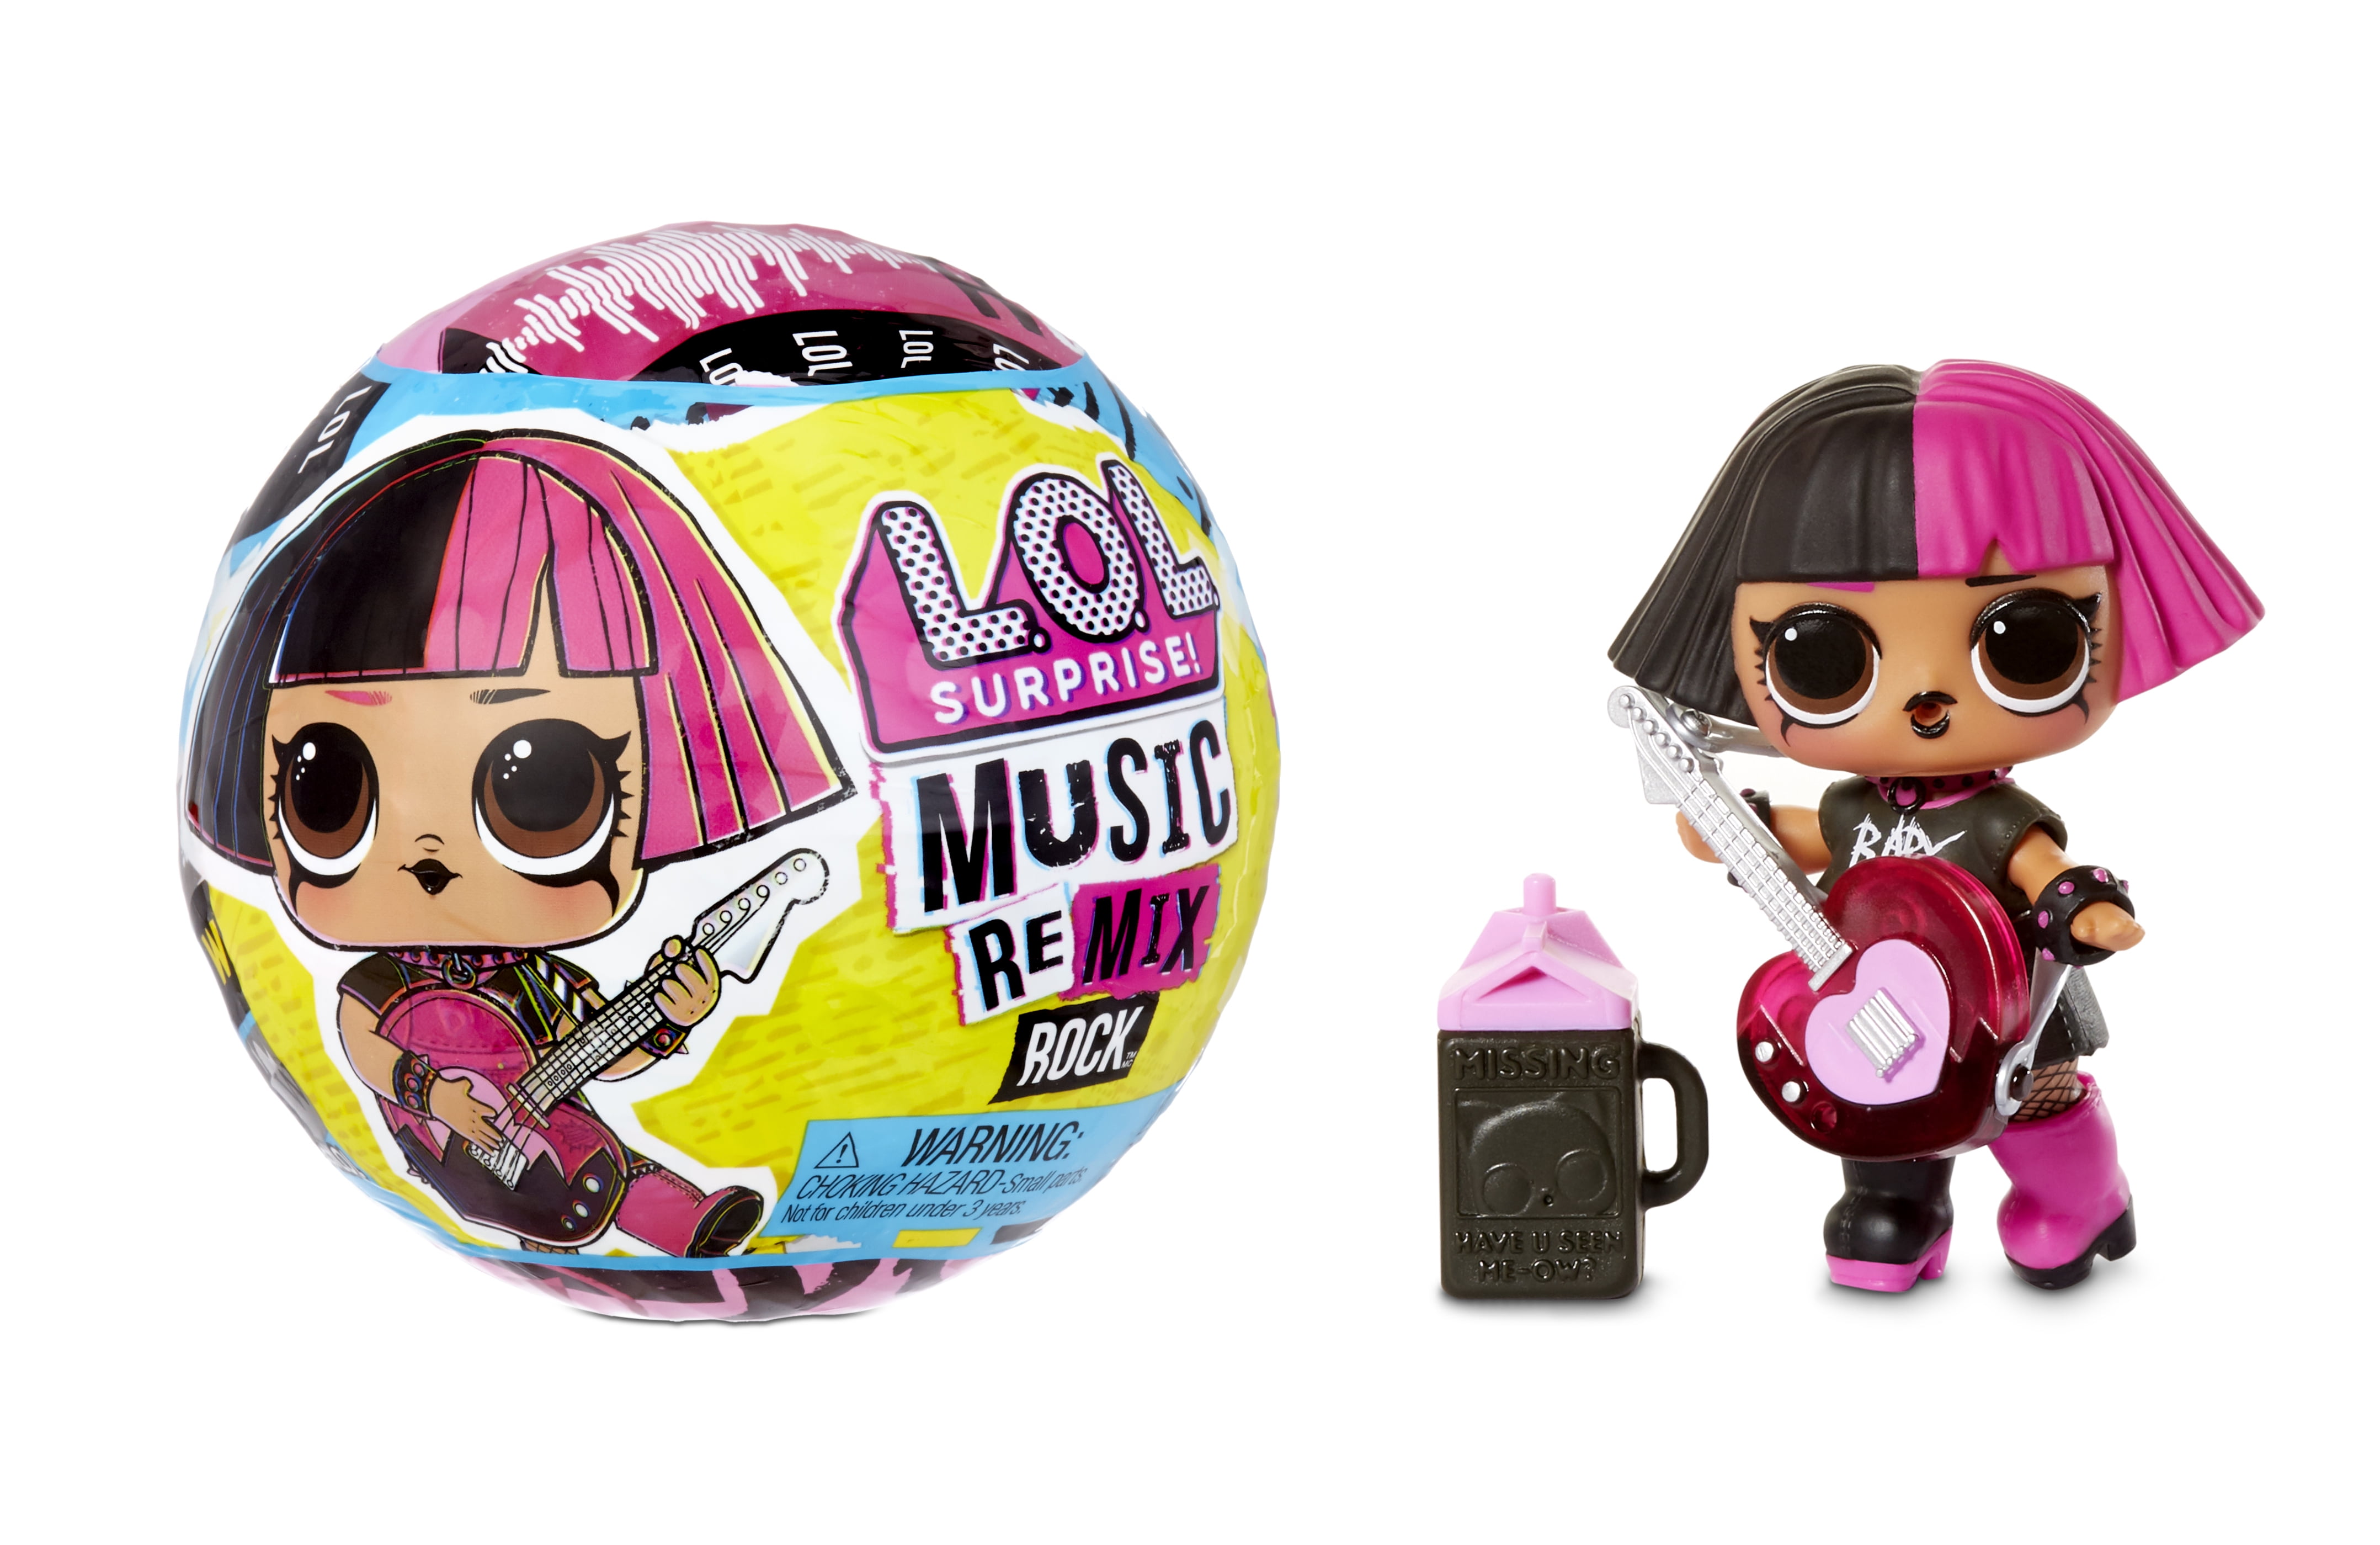  Surprise! Remix Rock Doll Playset, 7 Pieces 